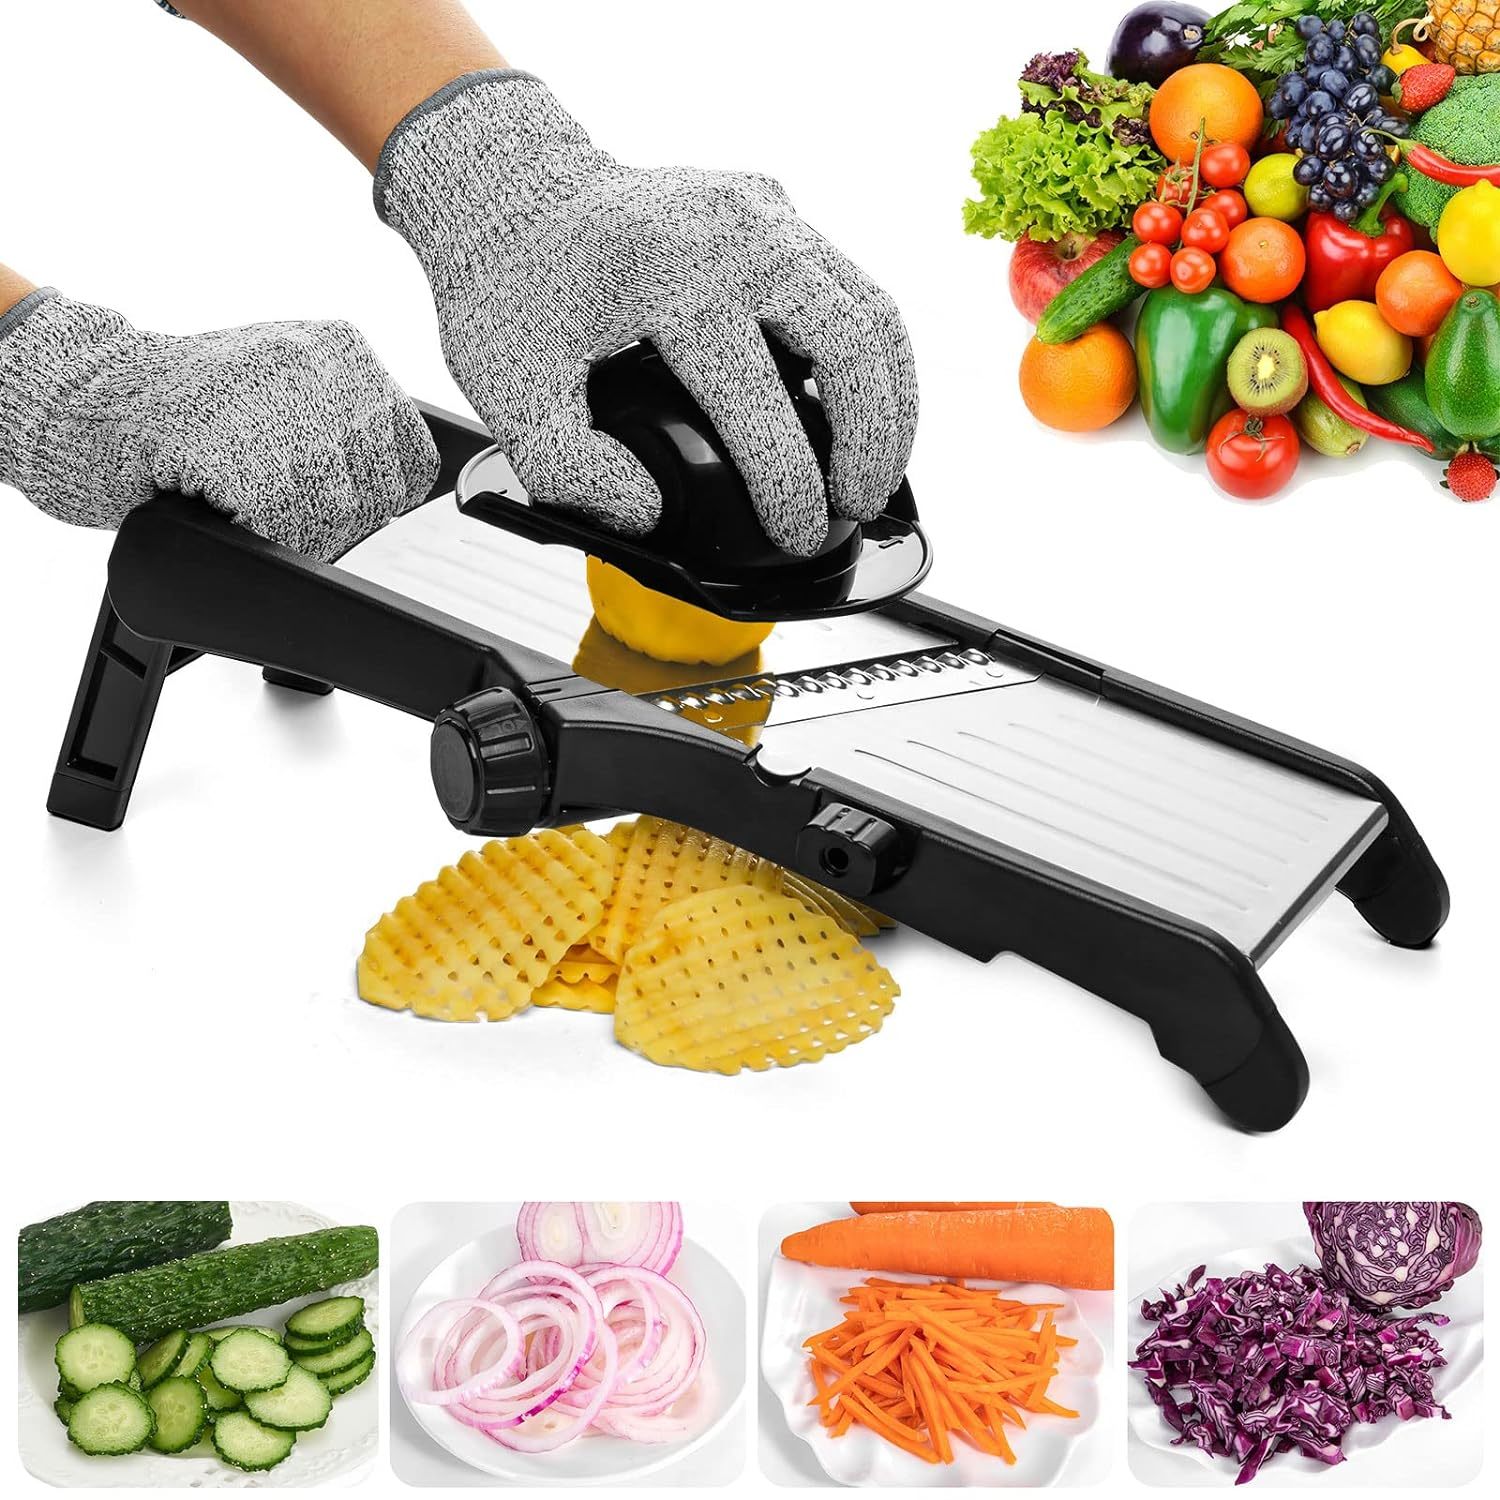 Primary image for Mandoline Slicer For Food And Vegetables - Adjustable Kitchen Slicer For Potatoe